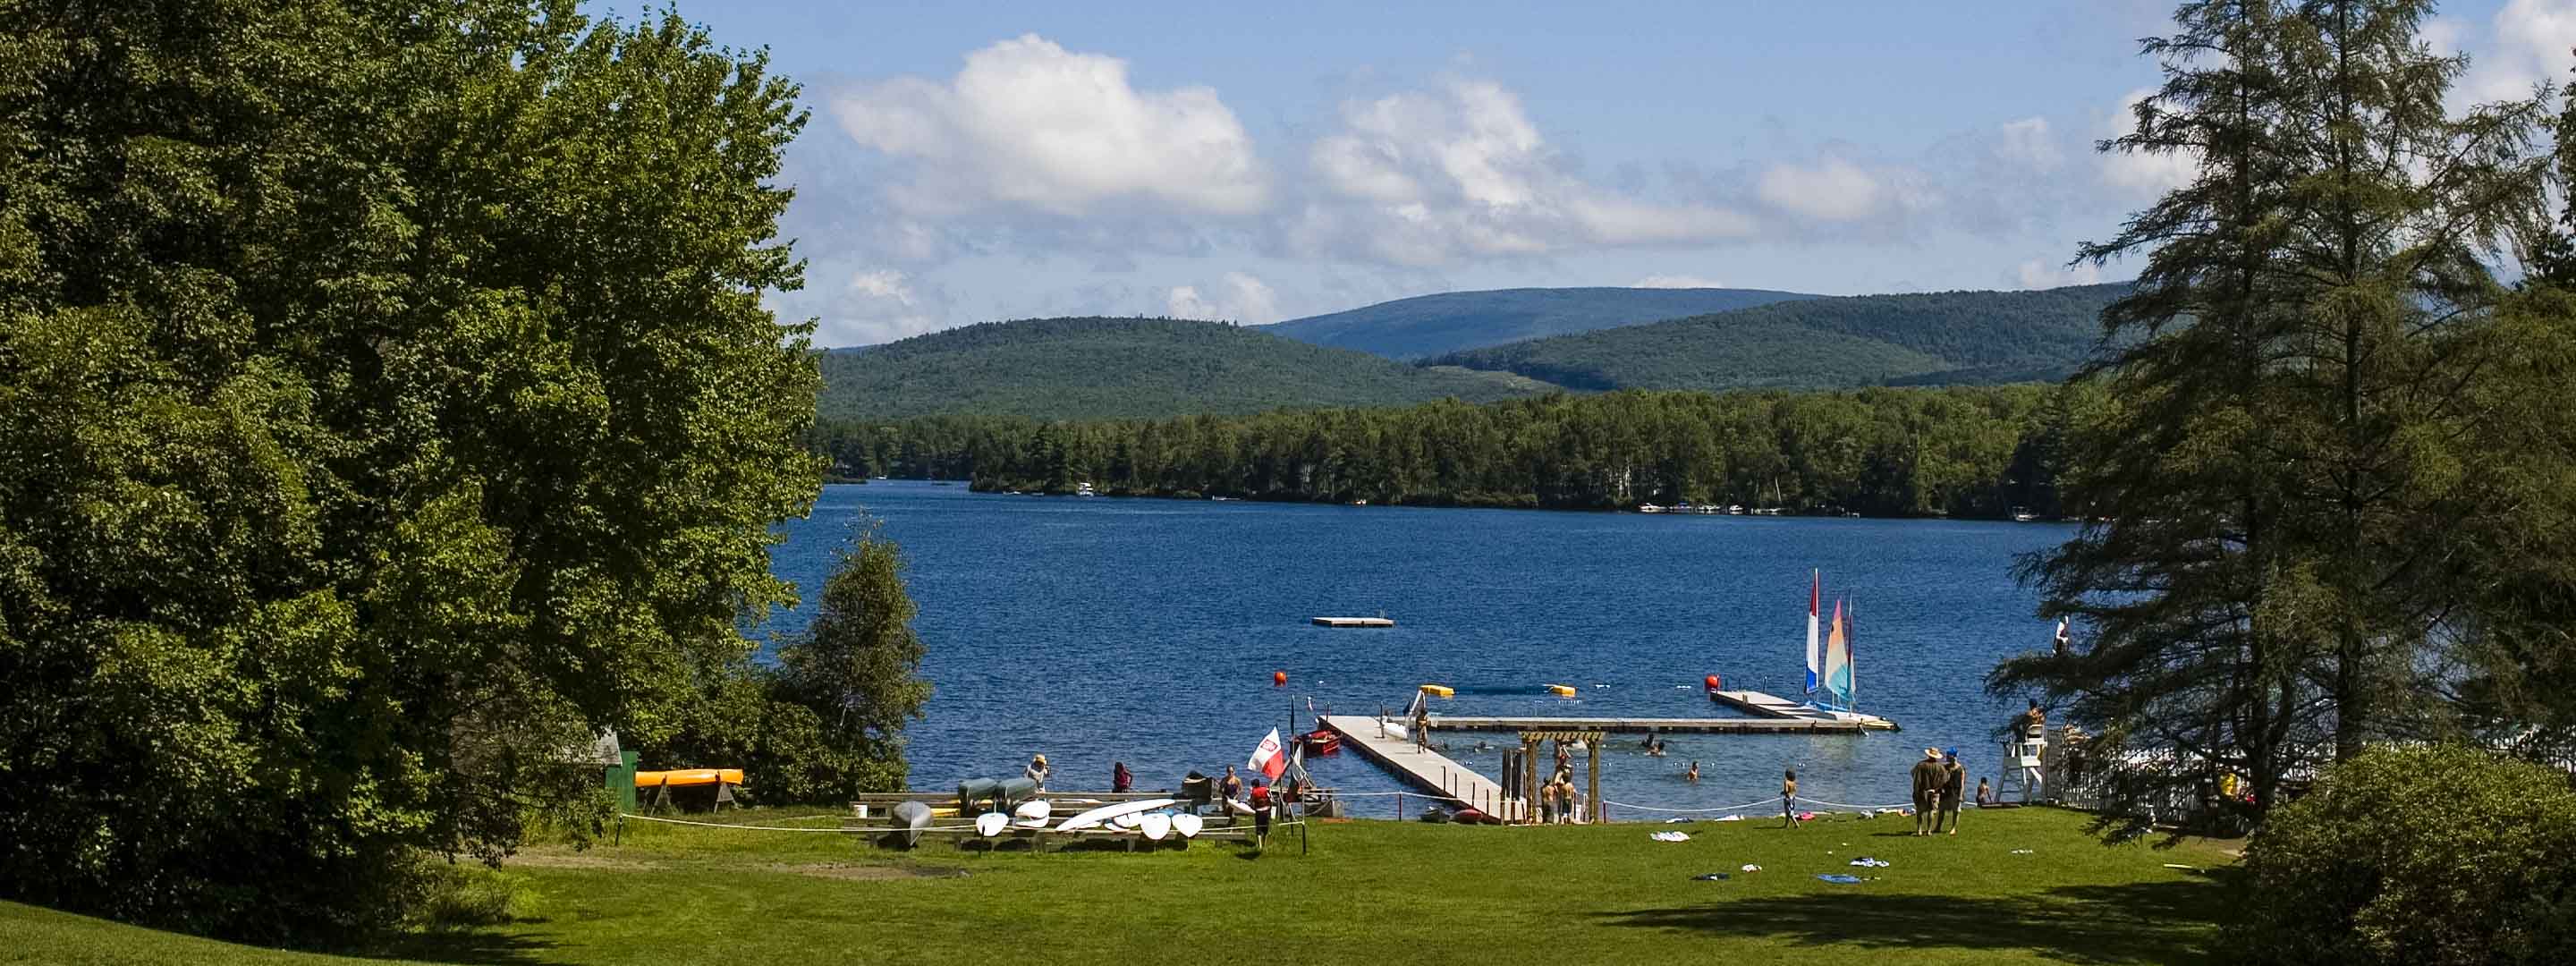 panoramic view of lake